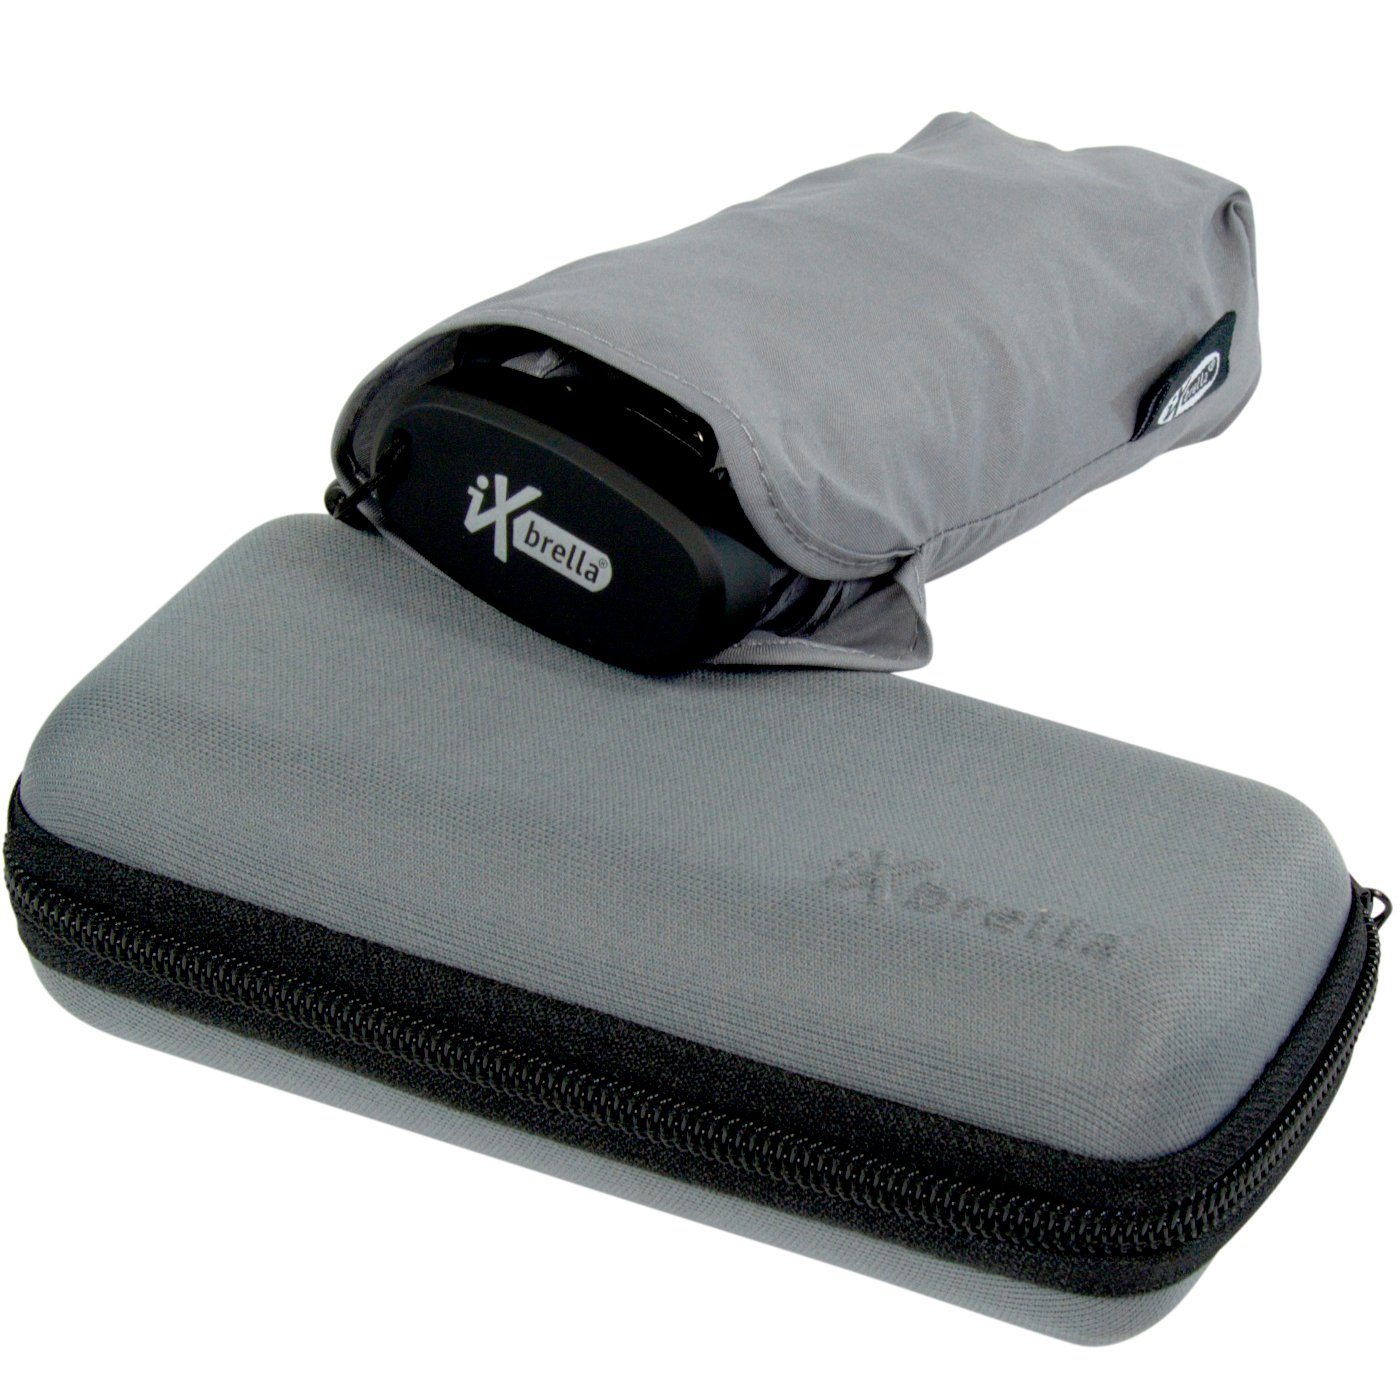 iX-brella Taschenregenschirm Ultra Mini 15 cm winziger Schirm im Handy Format, ultra-klein, mit Softcase-Etui - titanium grey grau